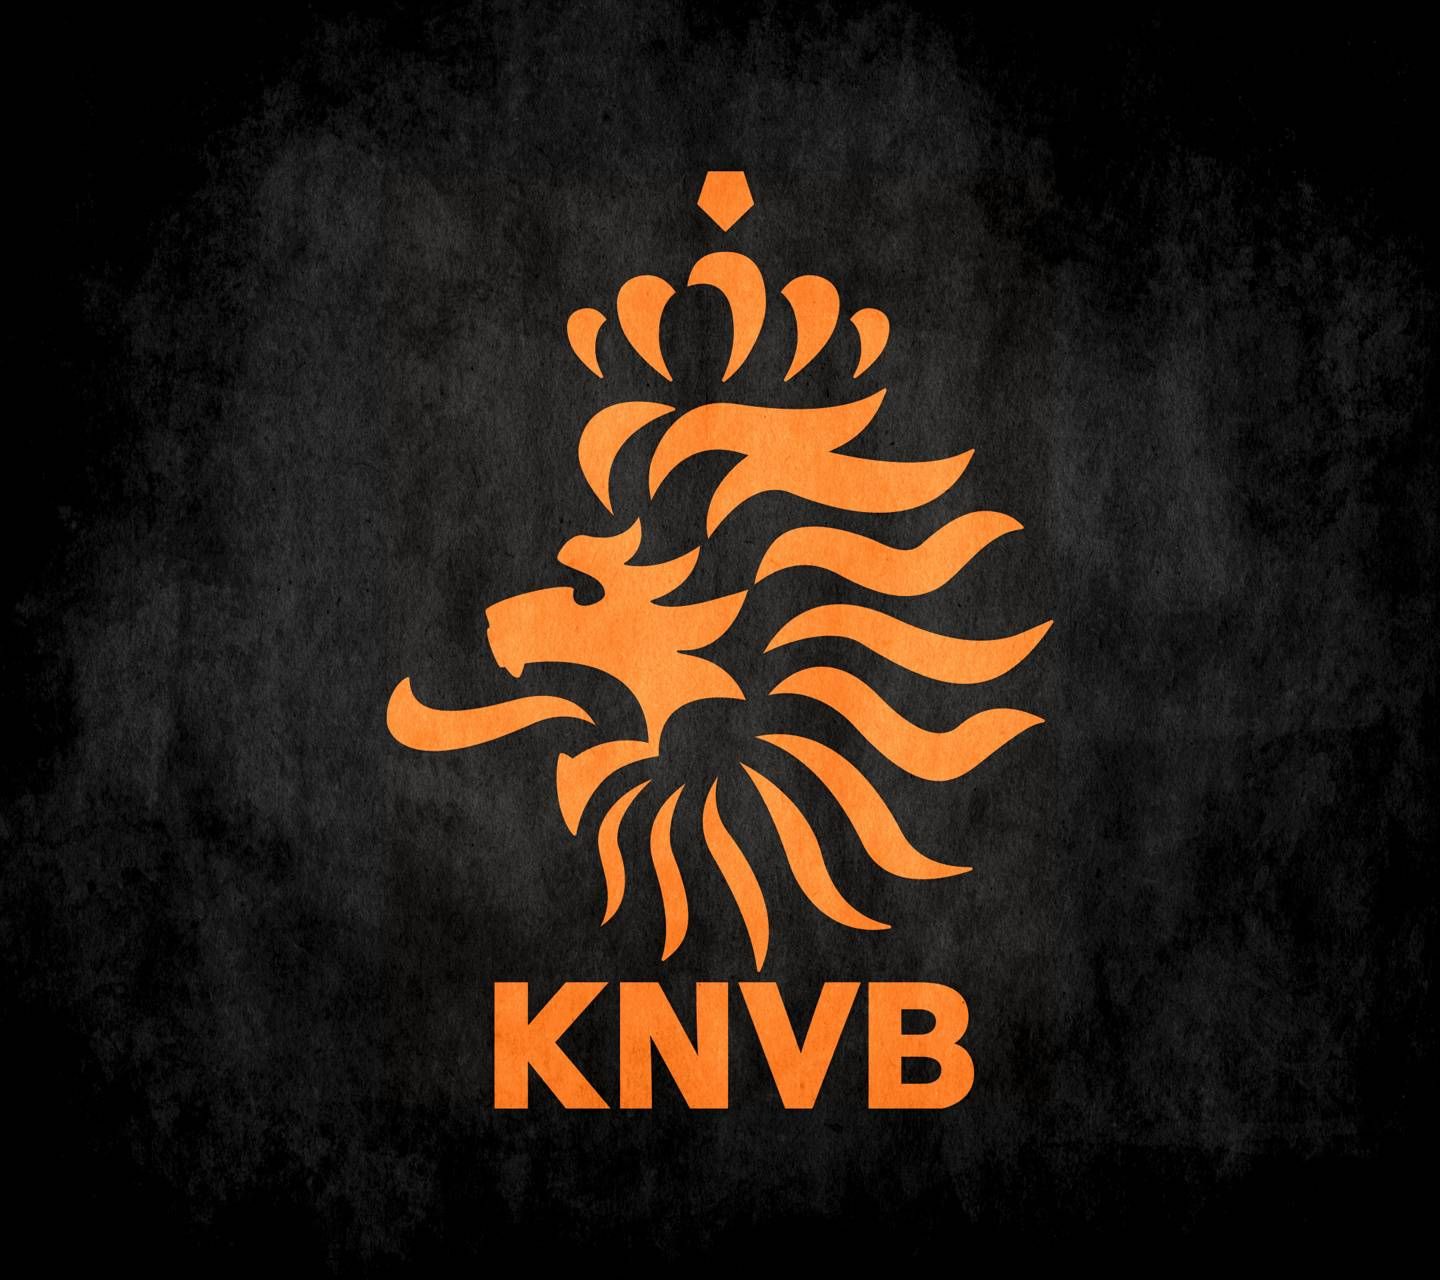 Download Logo Knvb Wallpaper - KibrisPDR